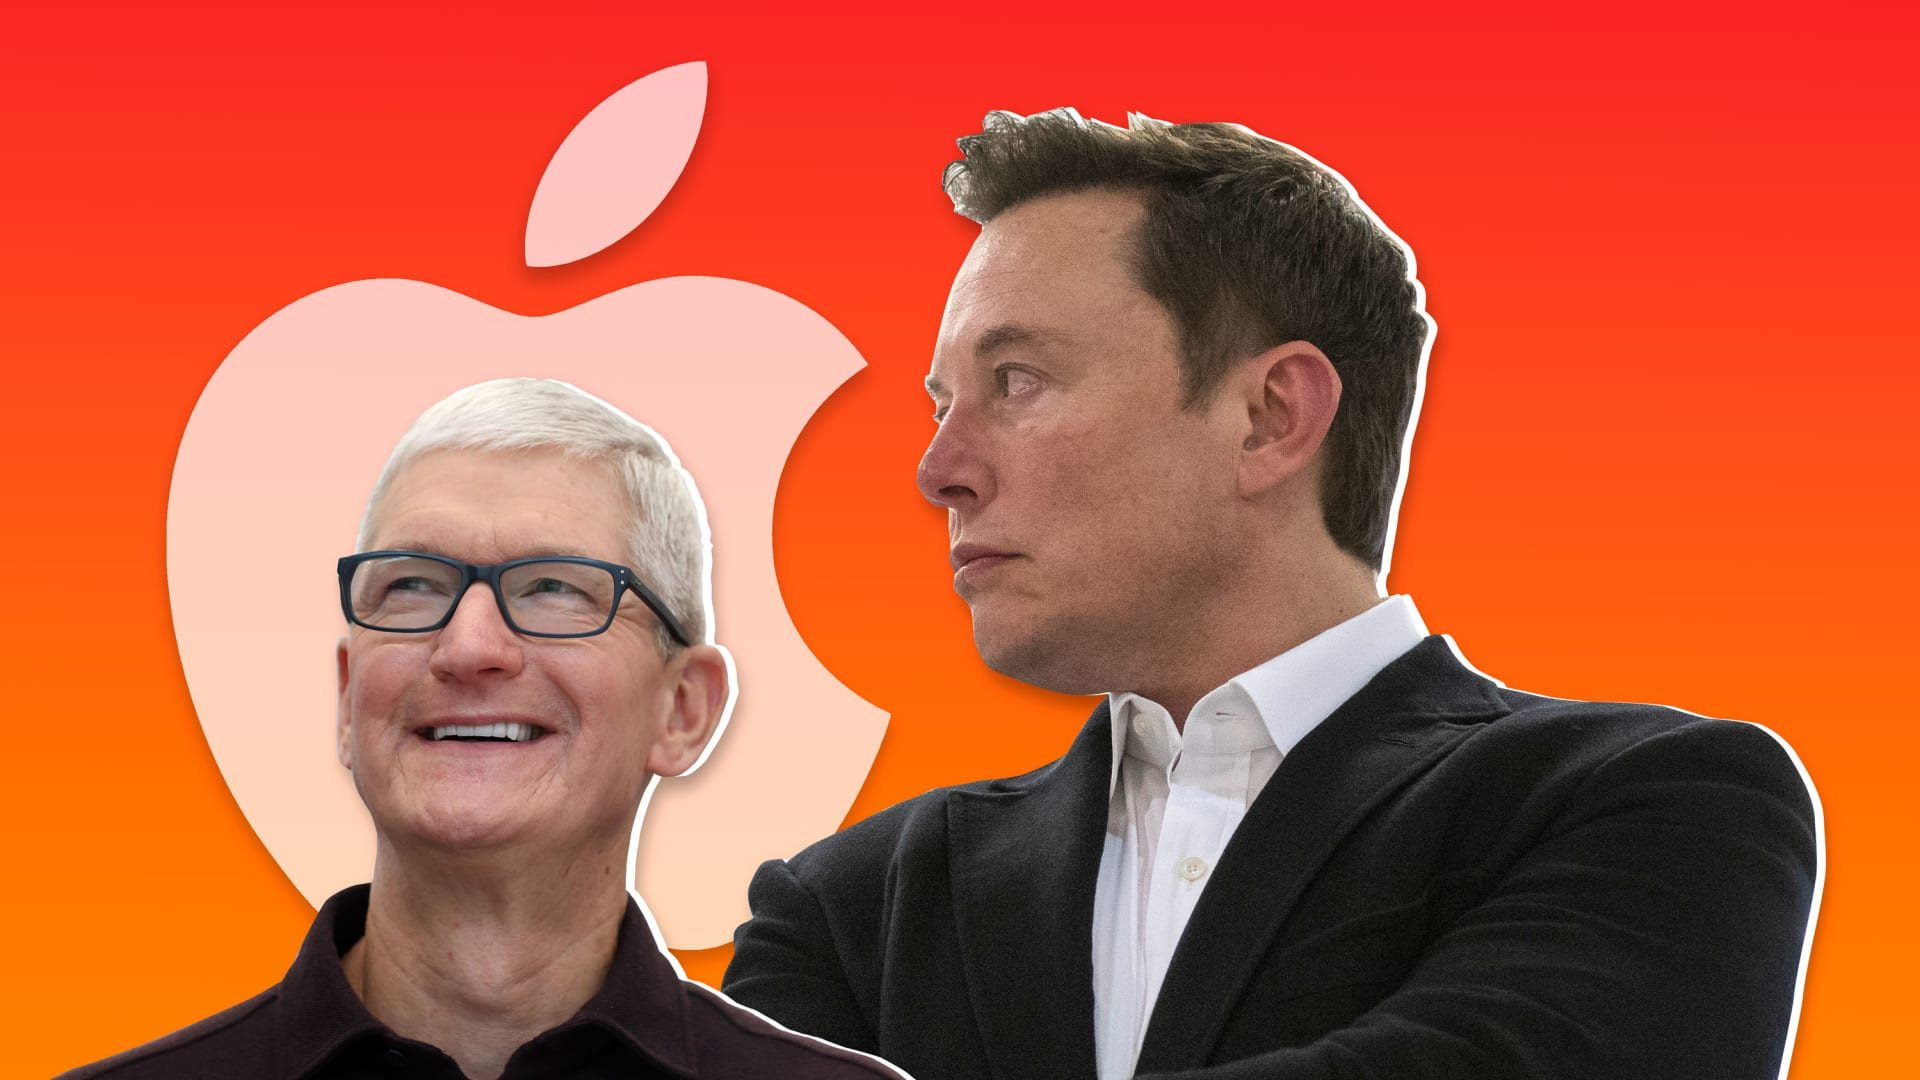 Lịch sử chứng minh chưa chắc Elon Musk đã ‘có cửa’ đấu lại Apple! - Ảnh 3.